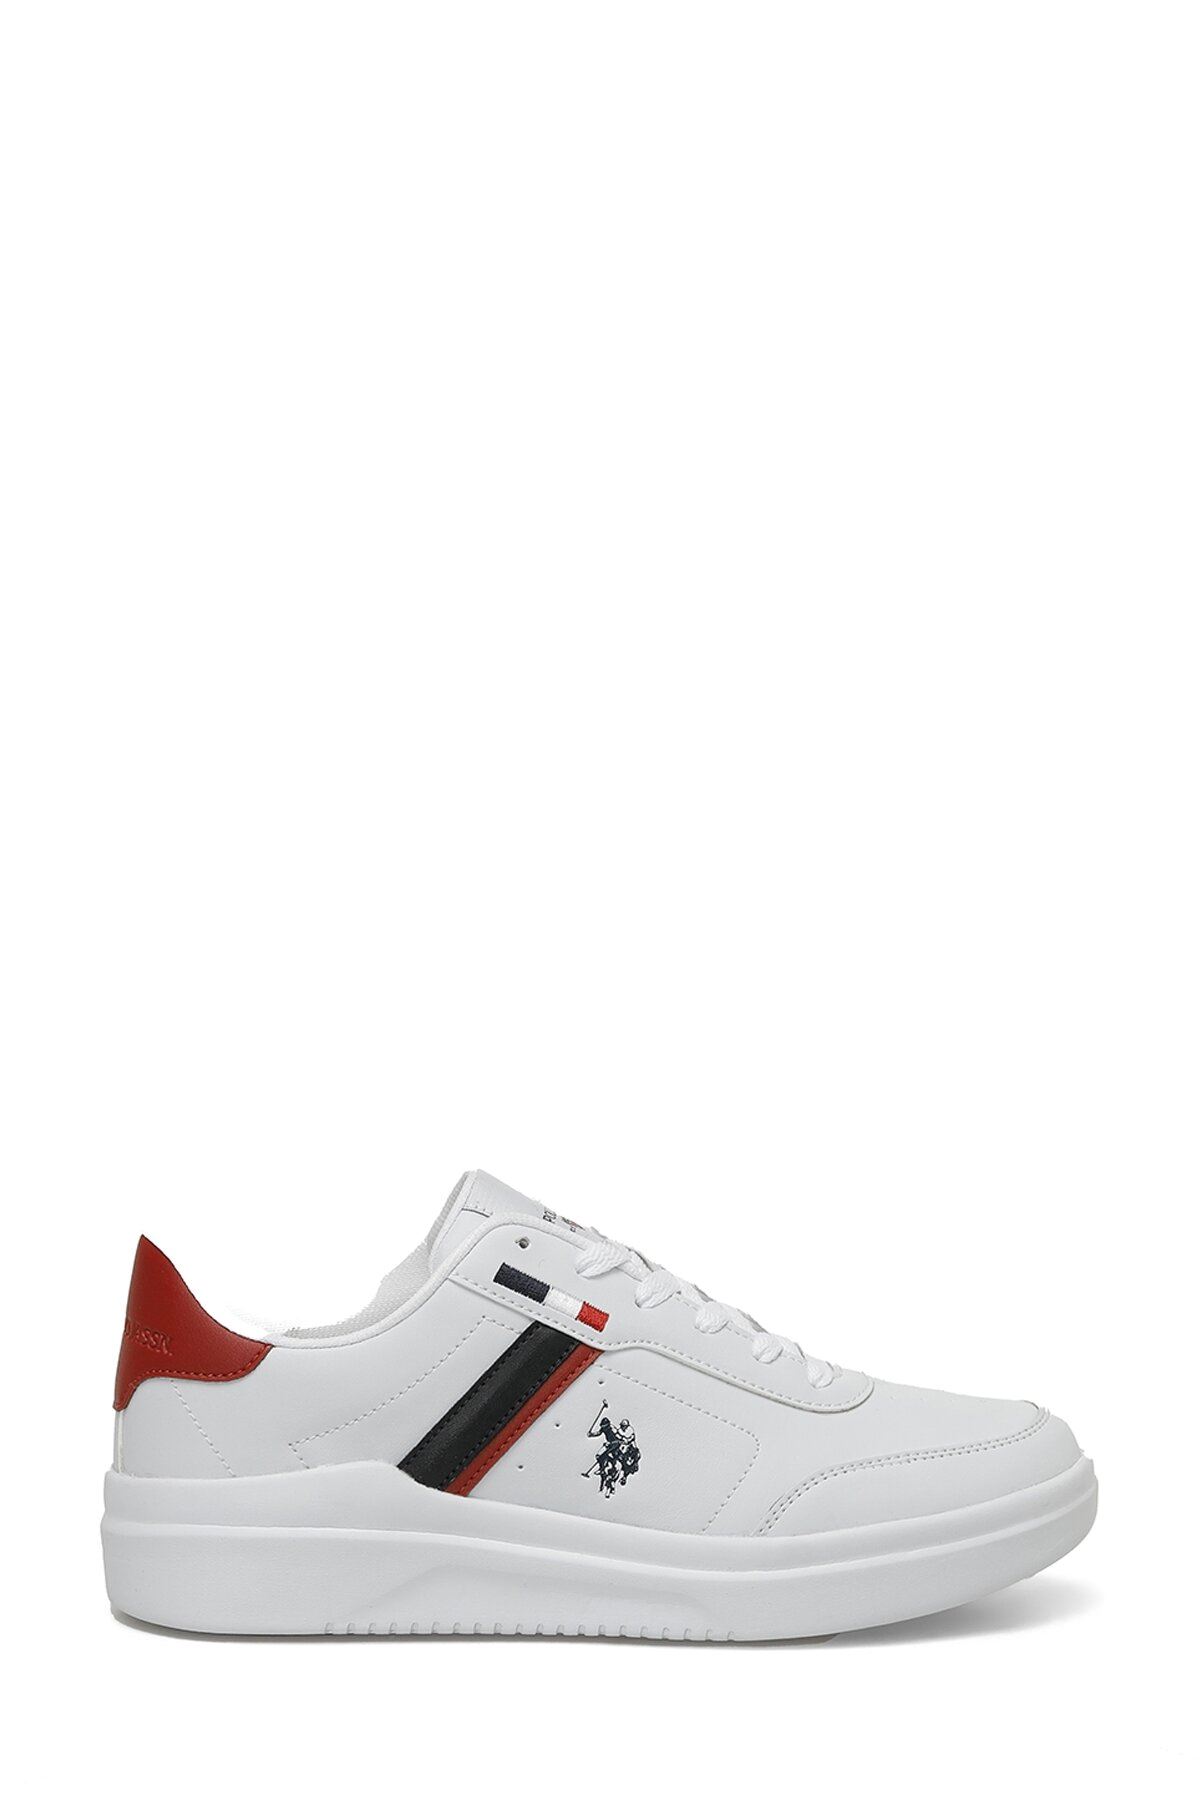 Berkeley Wmn 4Fx U.S. Polo Assn. Kadın Beyaz Spor Ayakkabı - 101501594